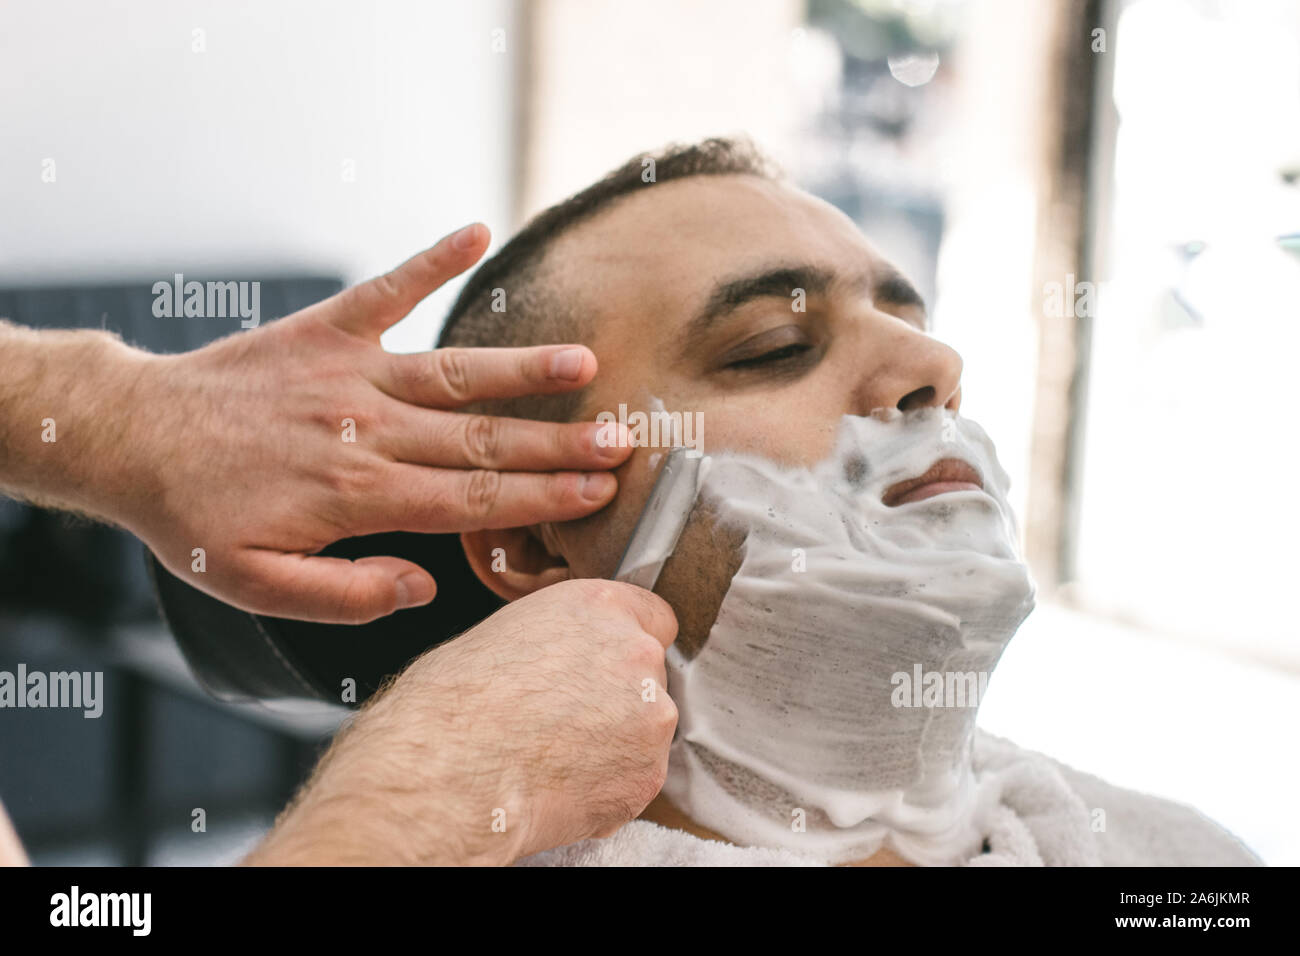 Friseur rasiert einen Bart zu einem Mann mit einem Rasiermesser in einem  Barbershop Stockfotografie - Alamy